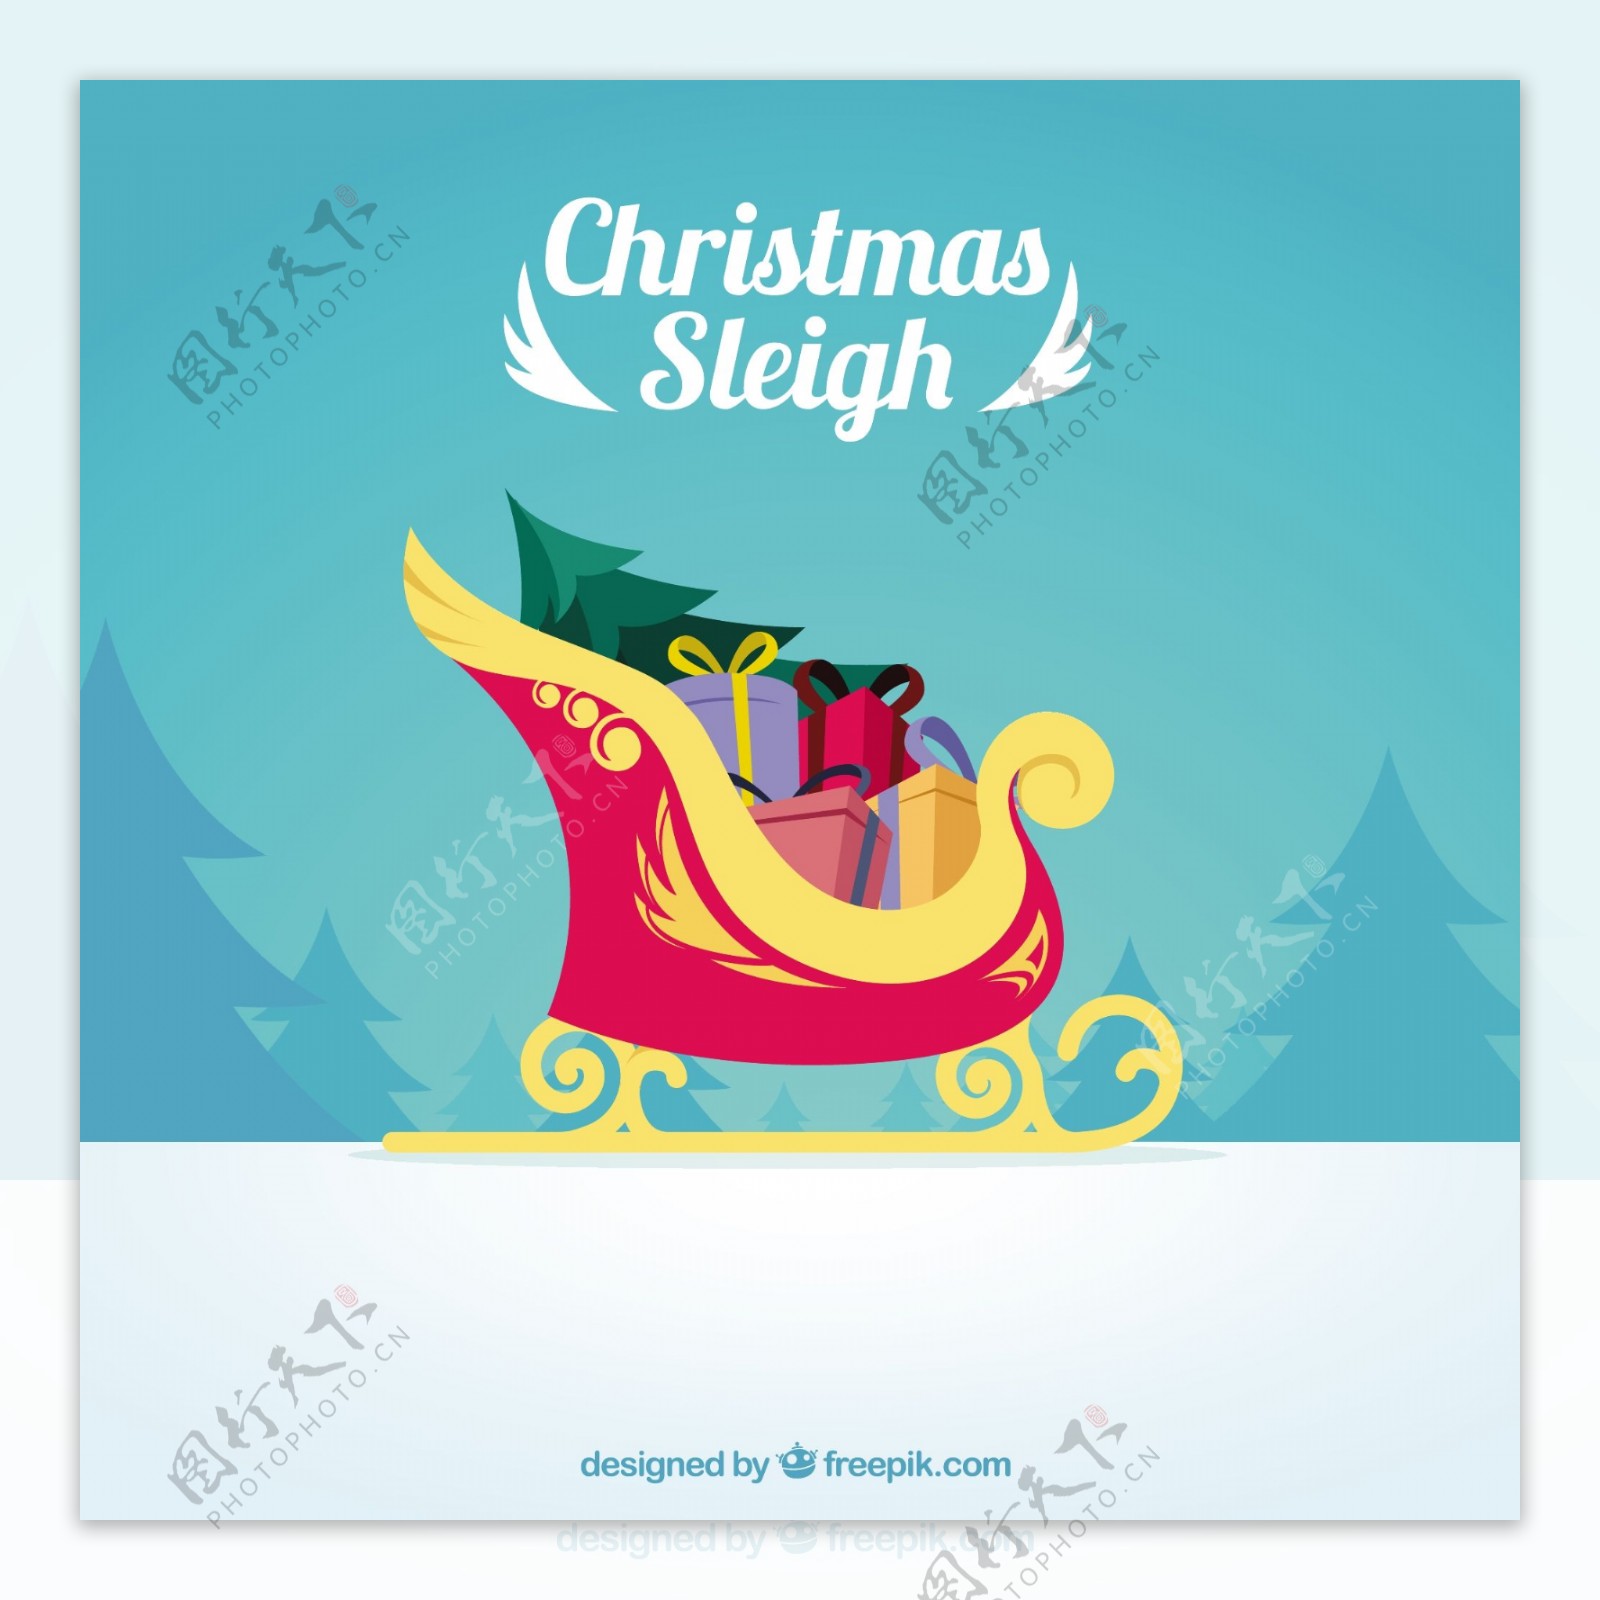 圣诞雪橇满载礼物的插图